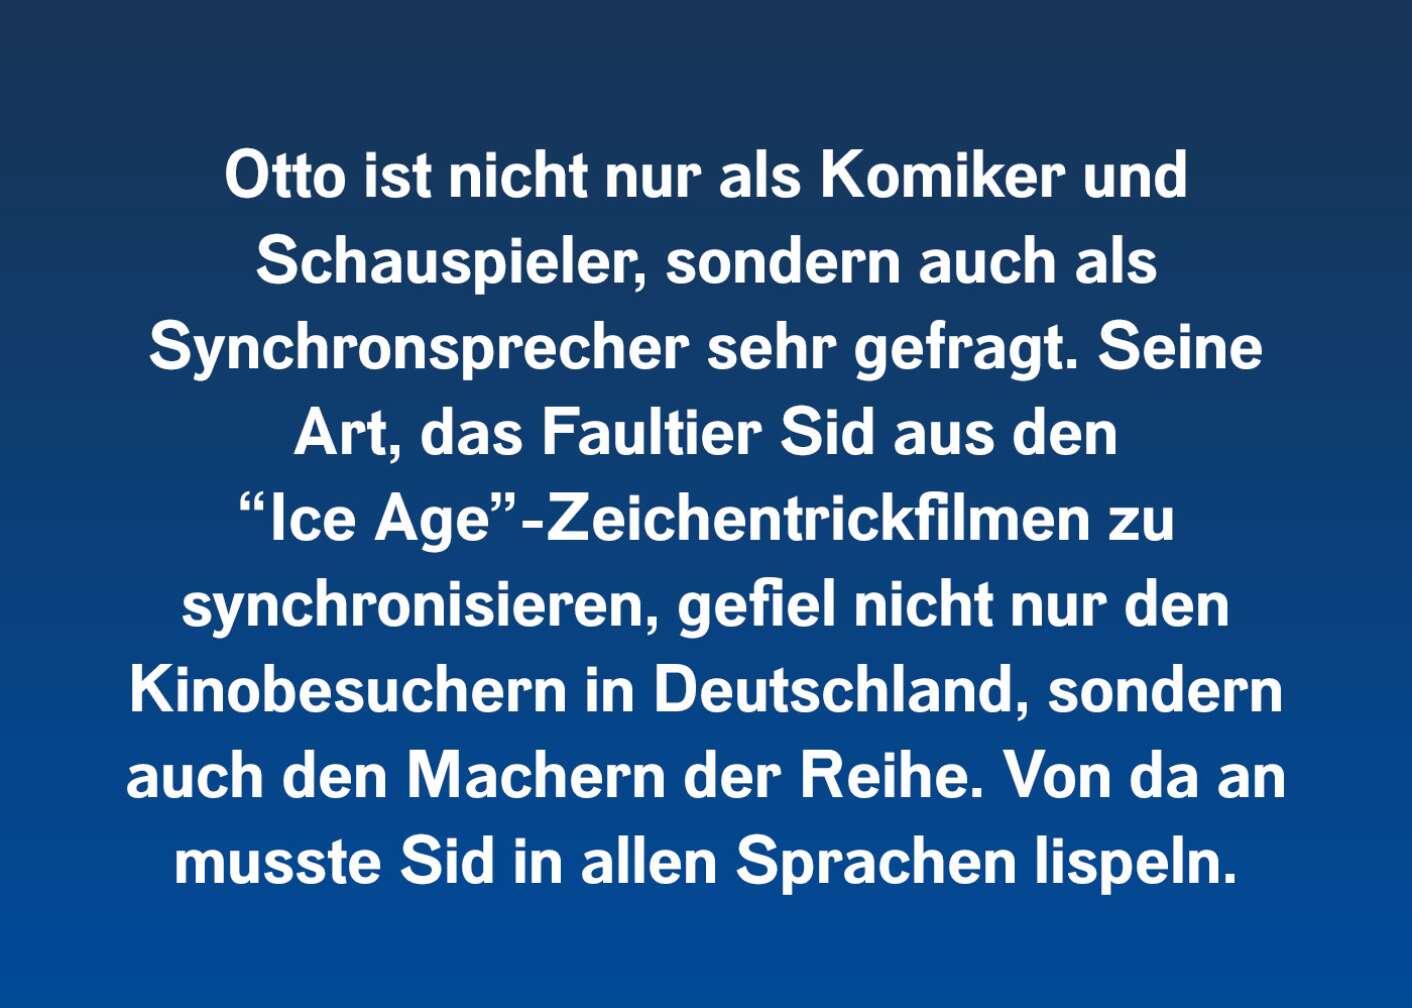 Otto ist nicht nur als Komiker und Schauspieler, sondern auch als Synchronsprecher sehr gefragt. Seine Art, das Faultier Sid aus den "Ice Age"-Zeichentrickfilmen zu synchronisieren, gefiel nicht nur den Kinobesuchern in Deutschland, sondern auch den Machern der Reihe. Von da an musste Sid in allen Sprachen lispeln.